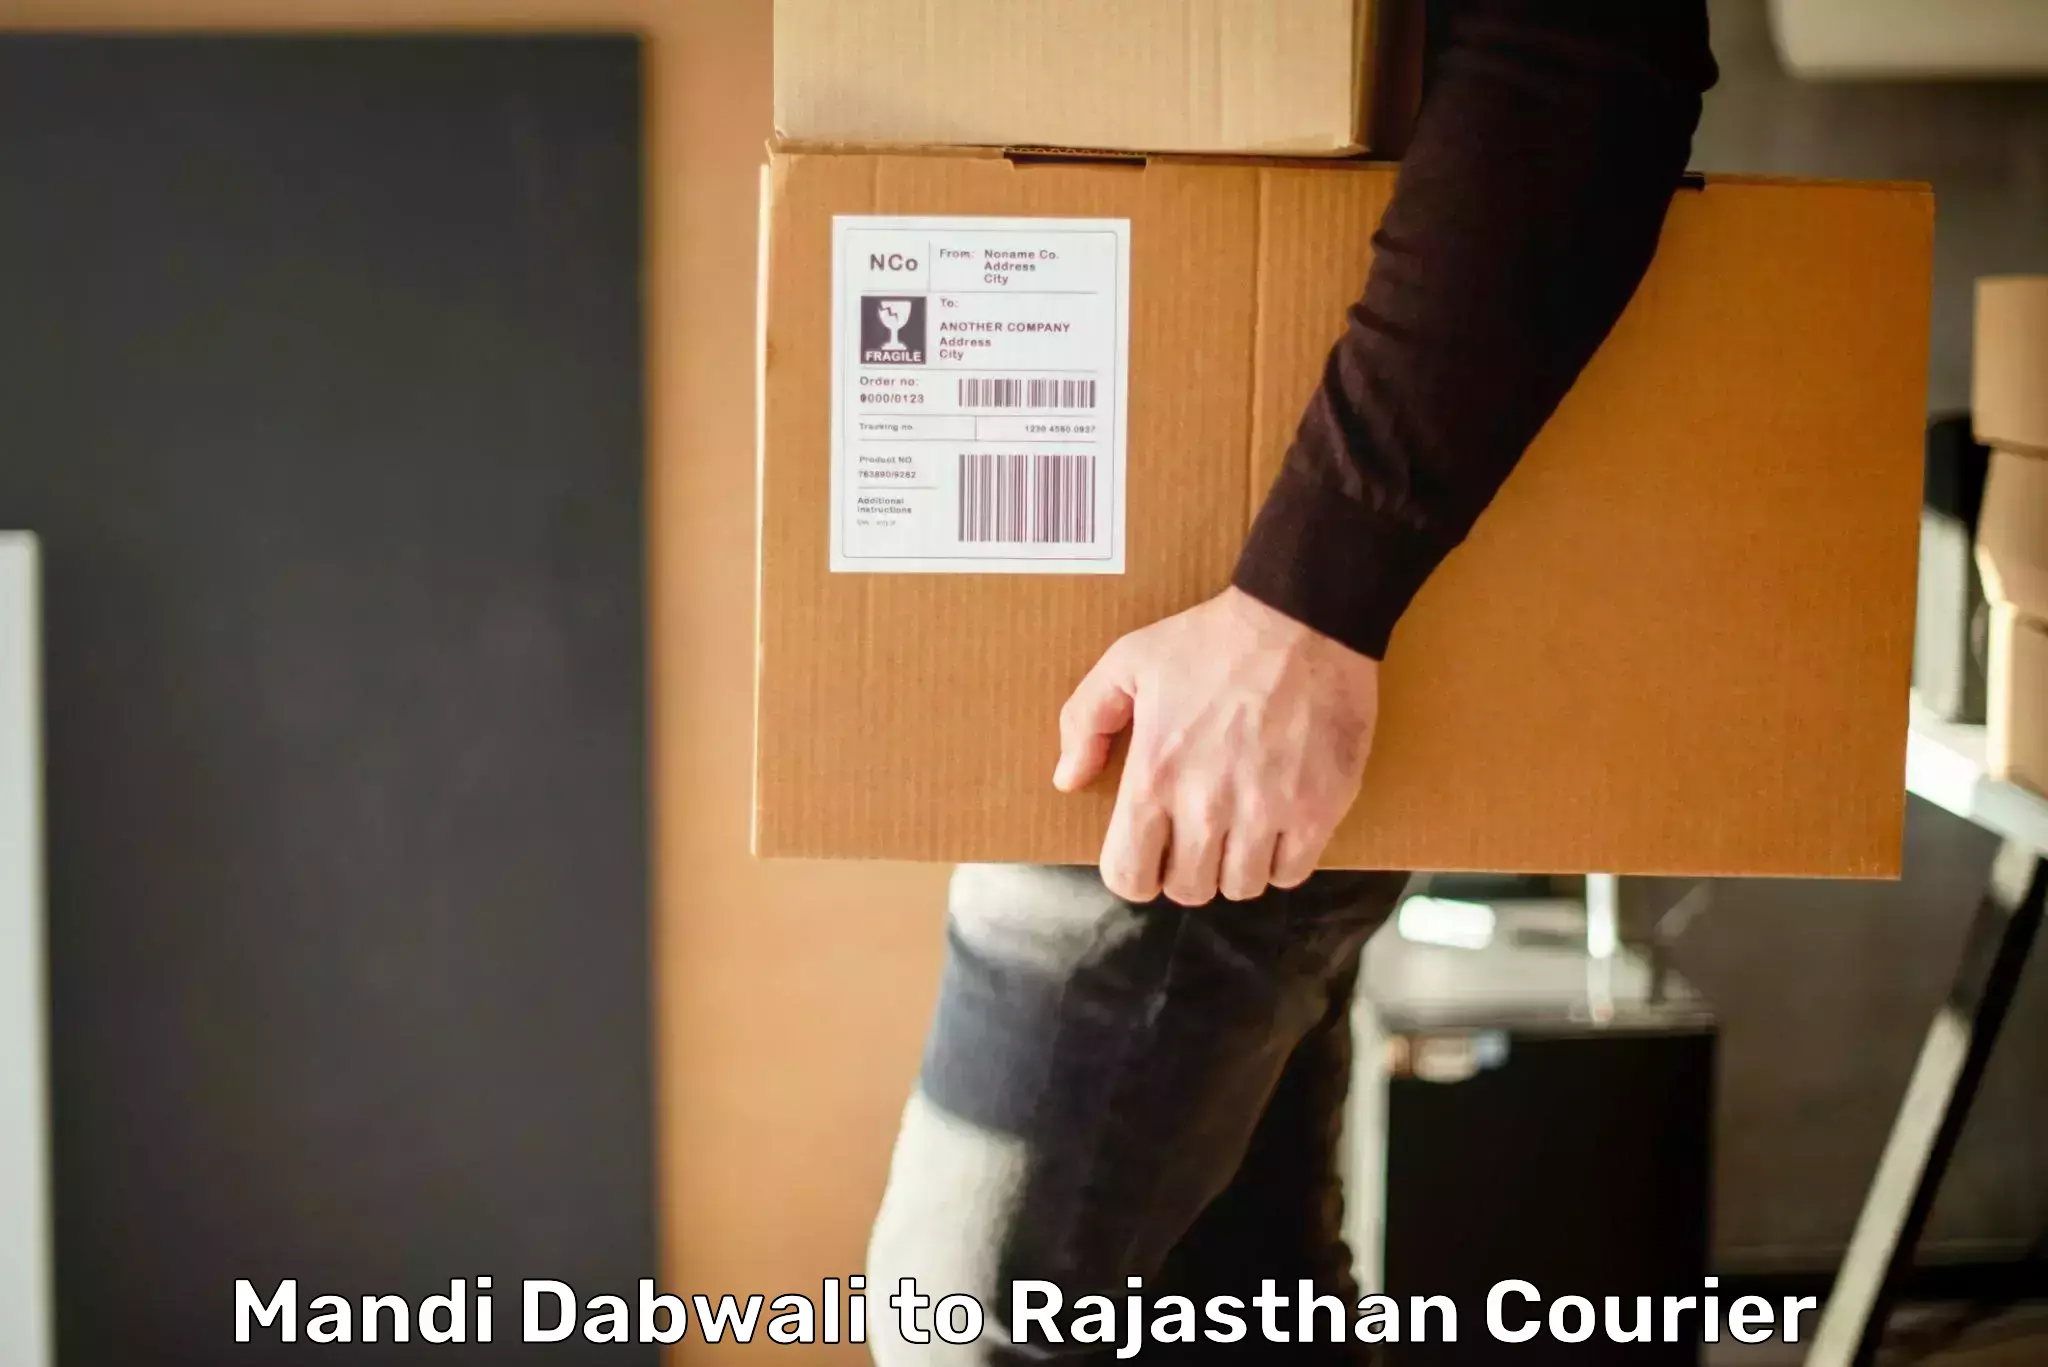 Express shipping in Mandi Dabwali to Rajasthan